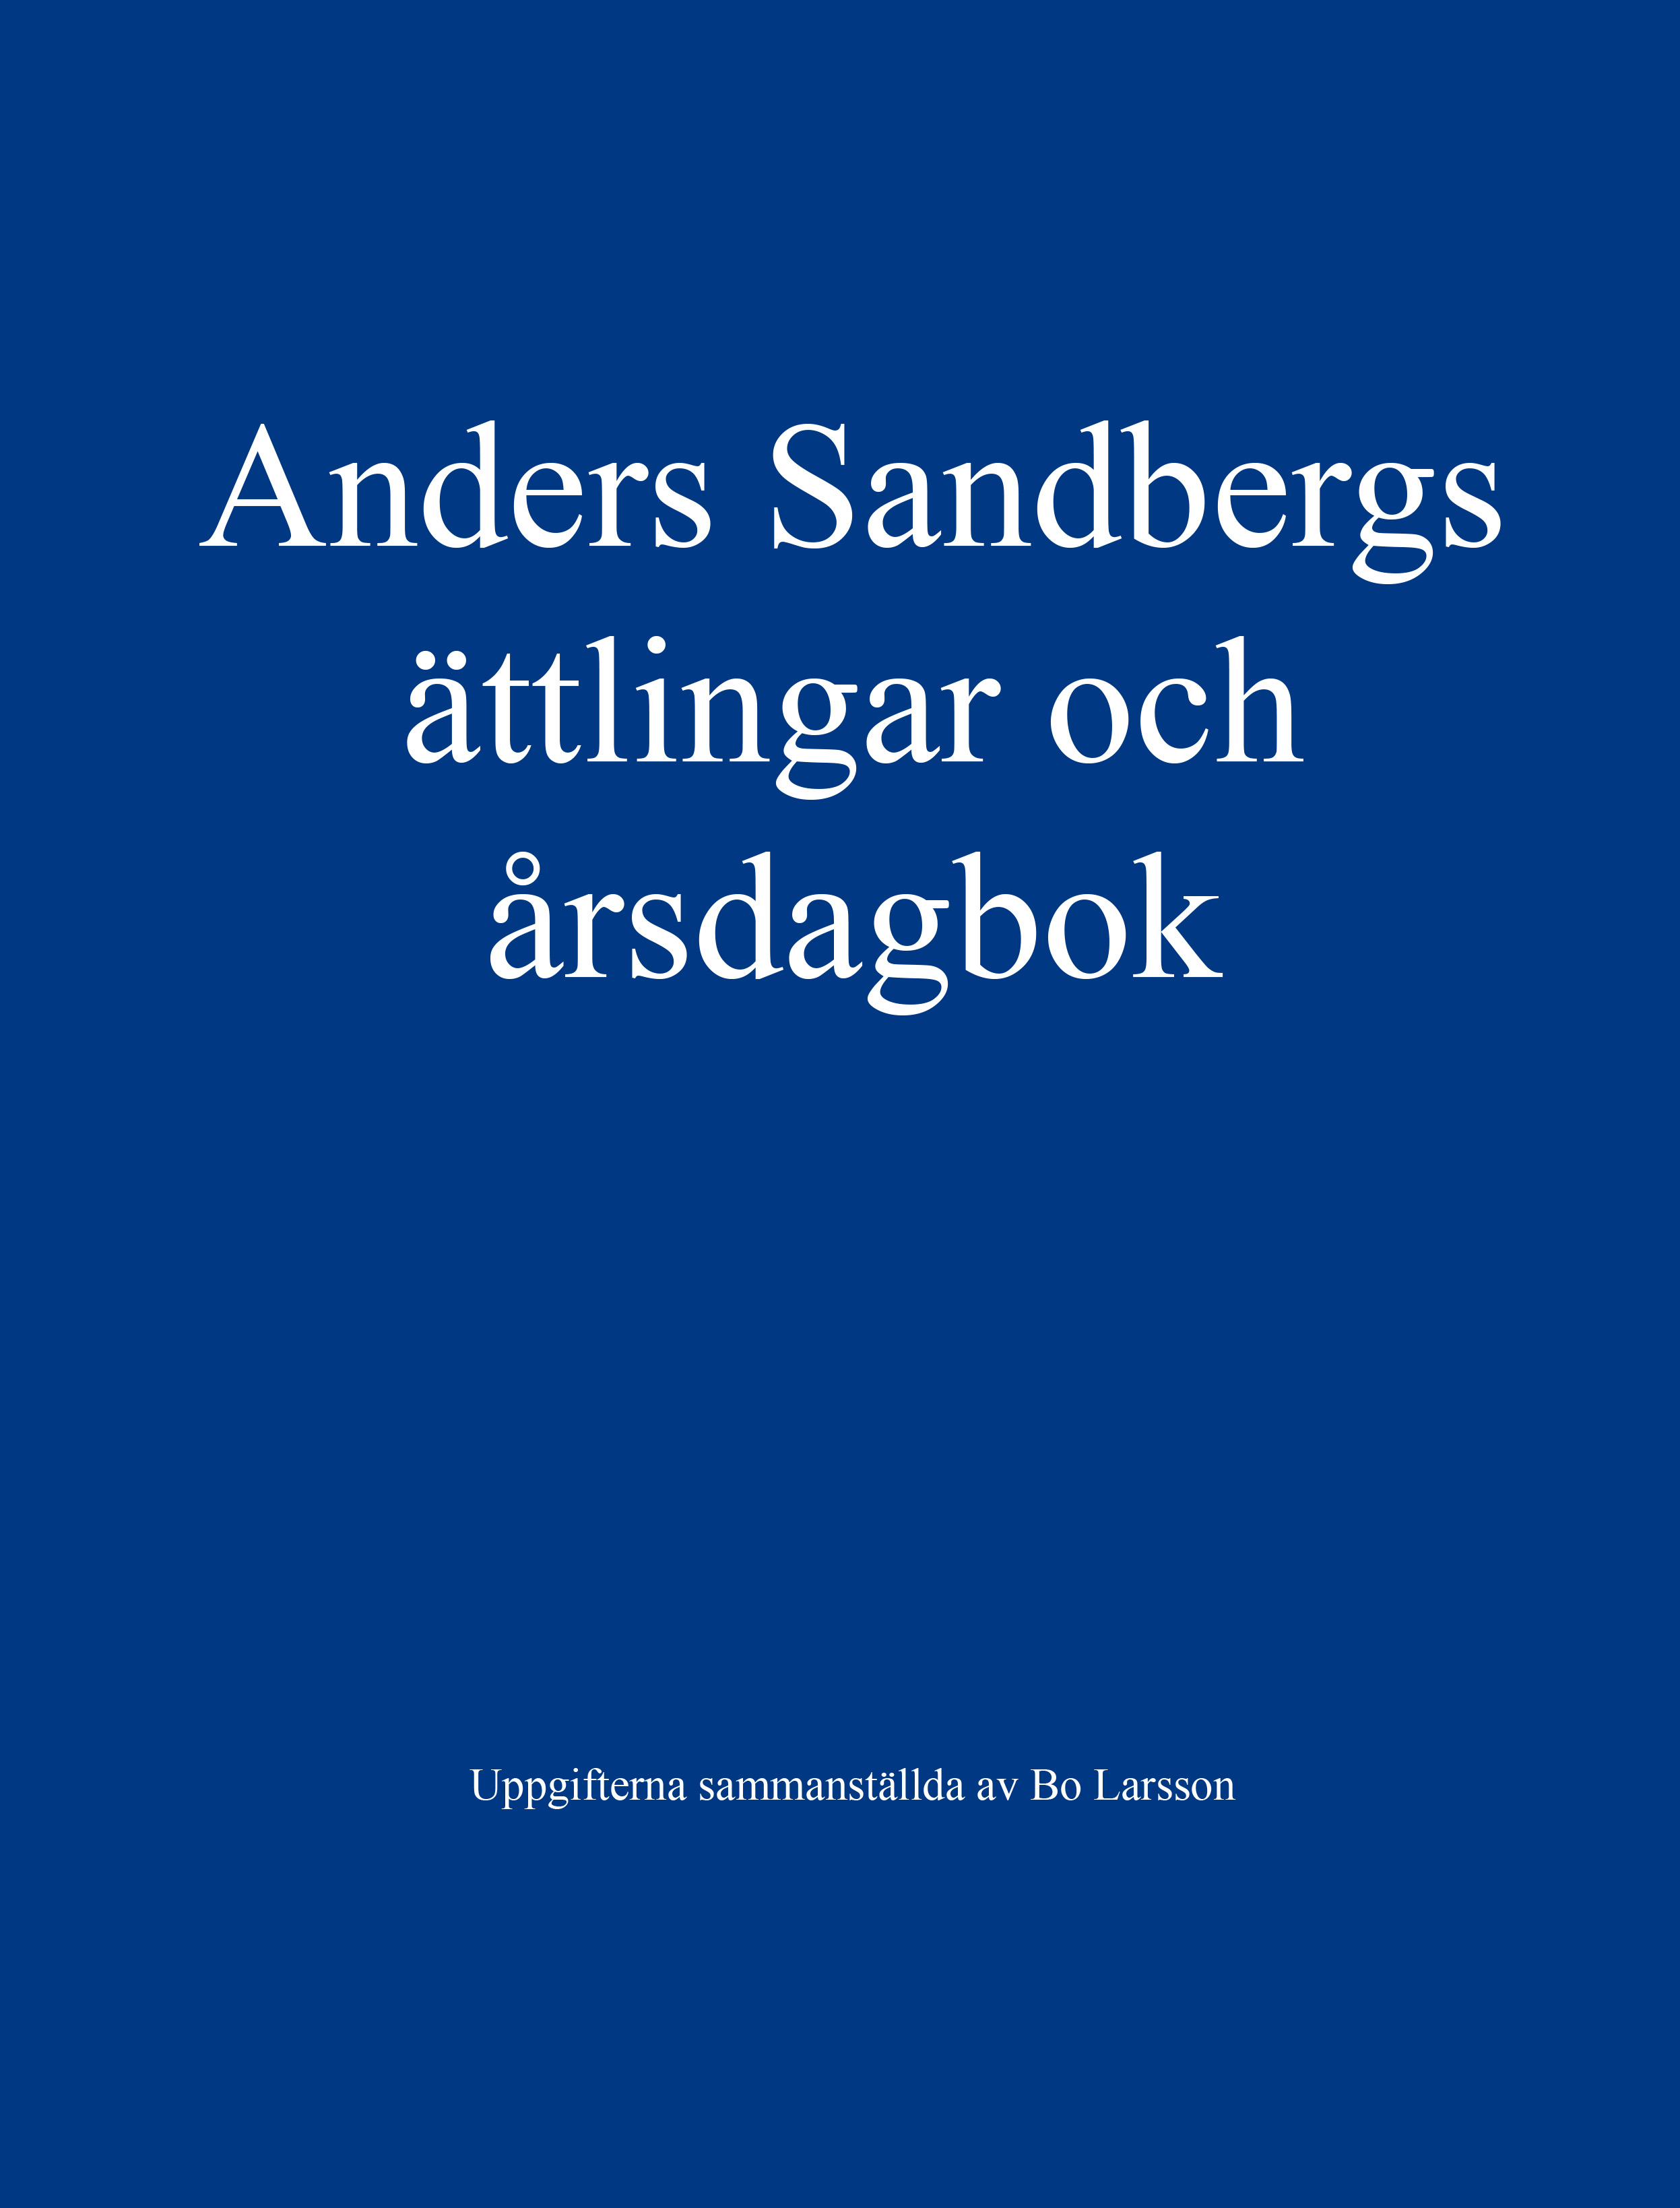 Anders Sandbergs ättlingar och årsdagbok